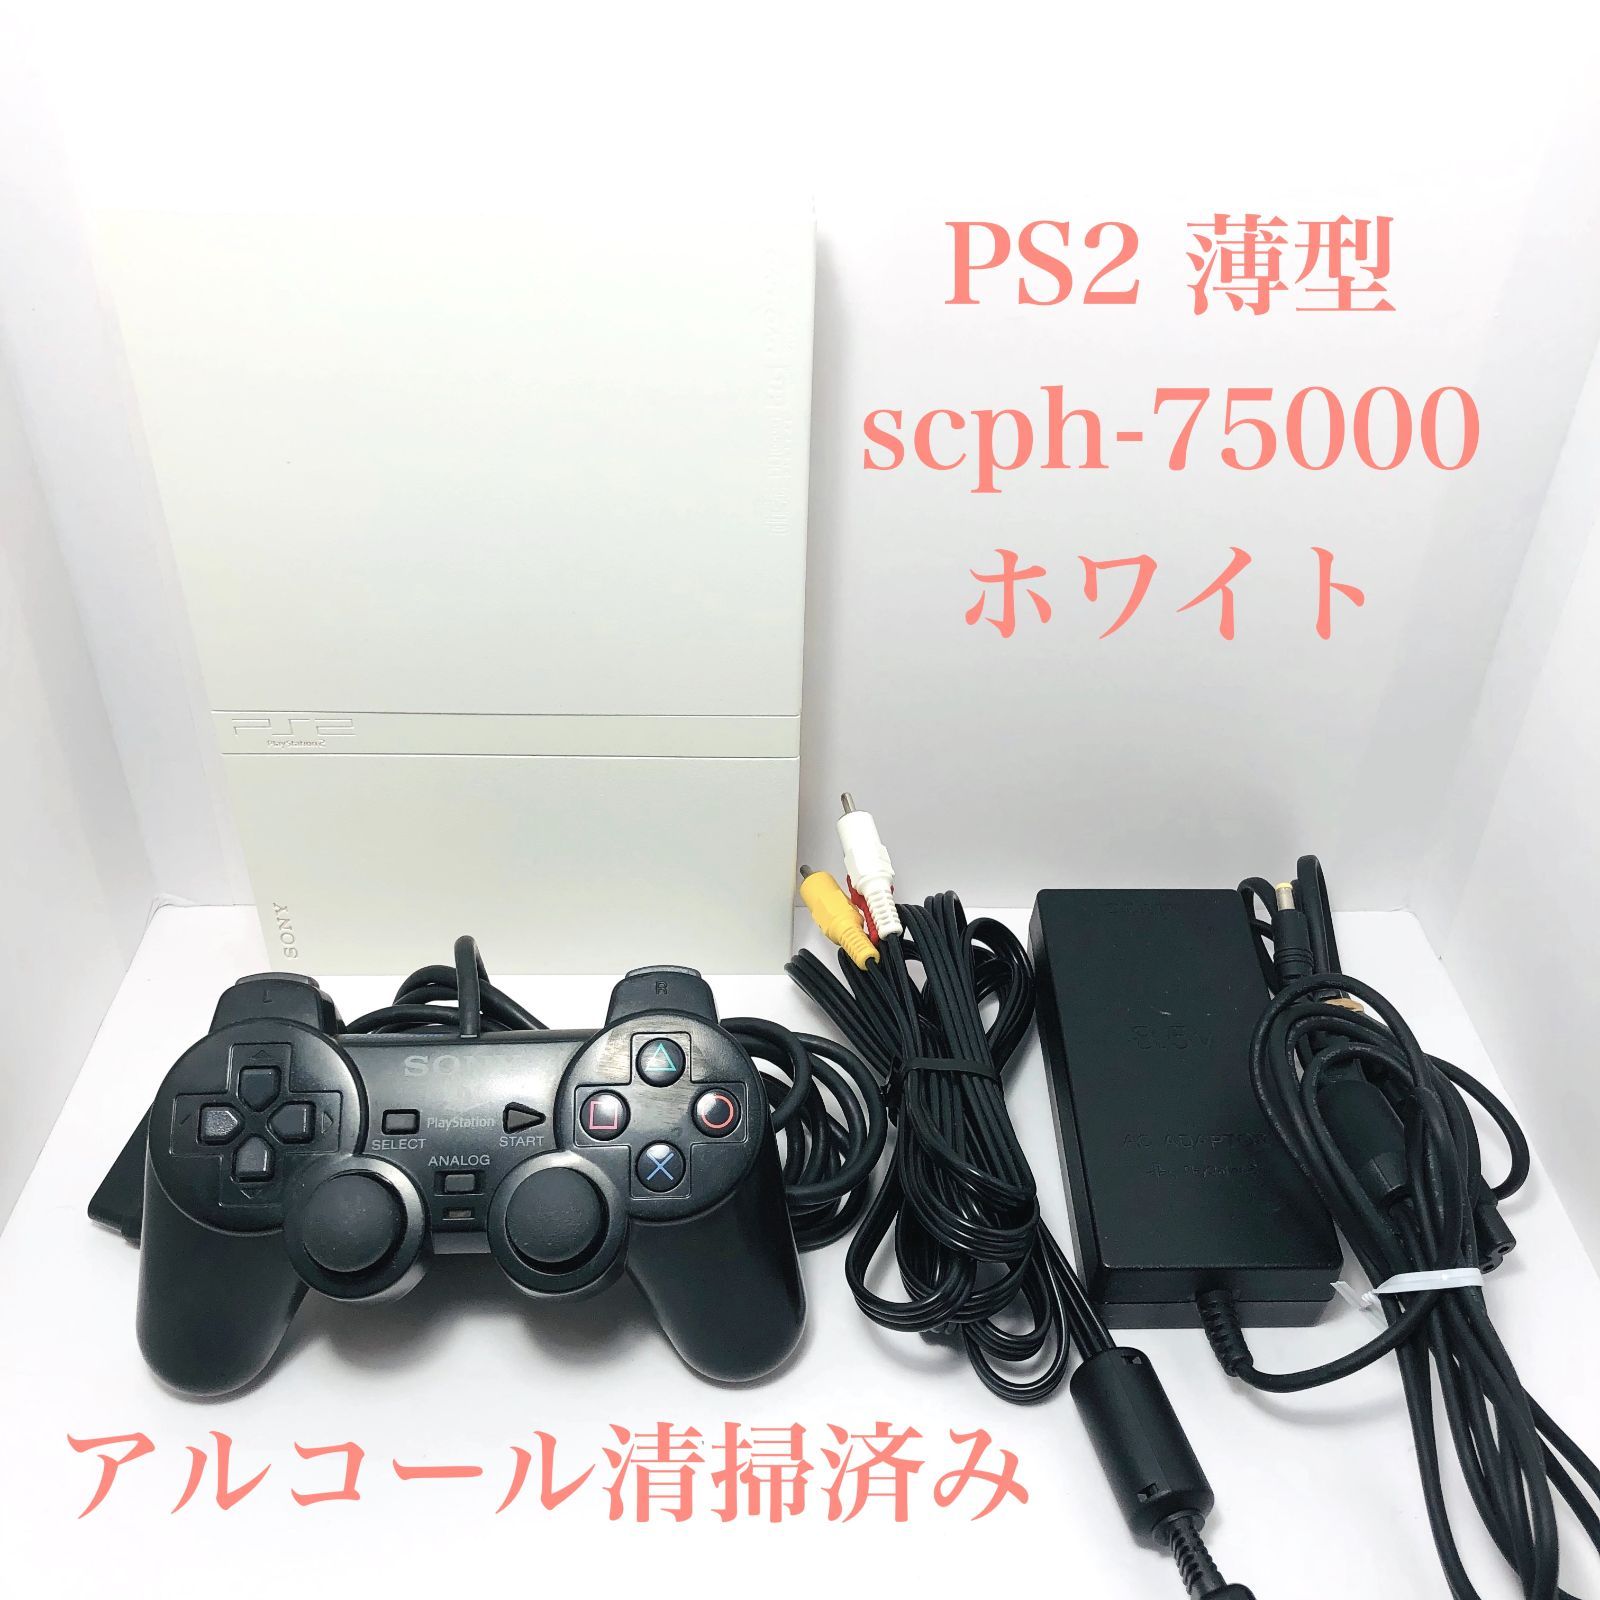 【すぐ遊べるセット】PS2 PlayStation2 SCPH-75000 CW